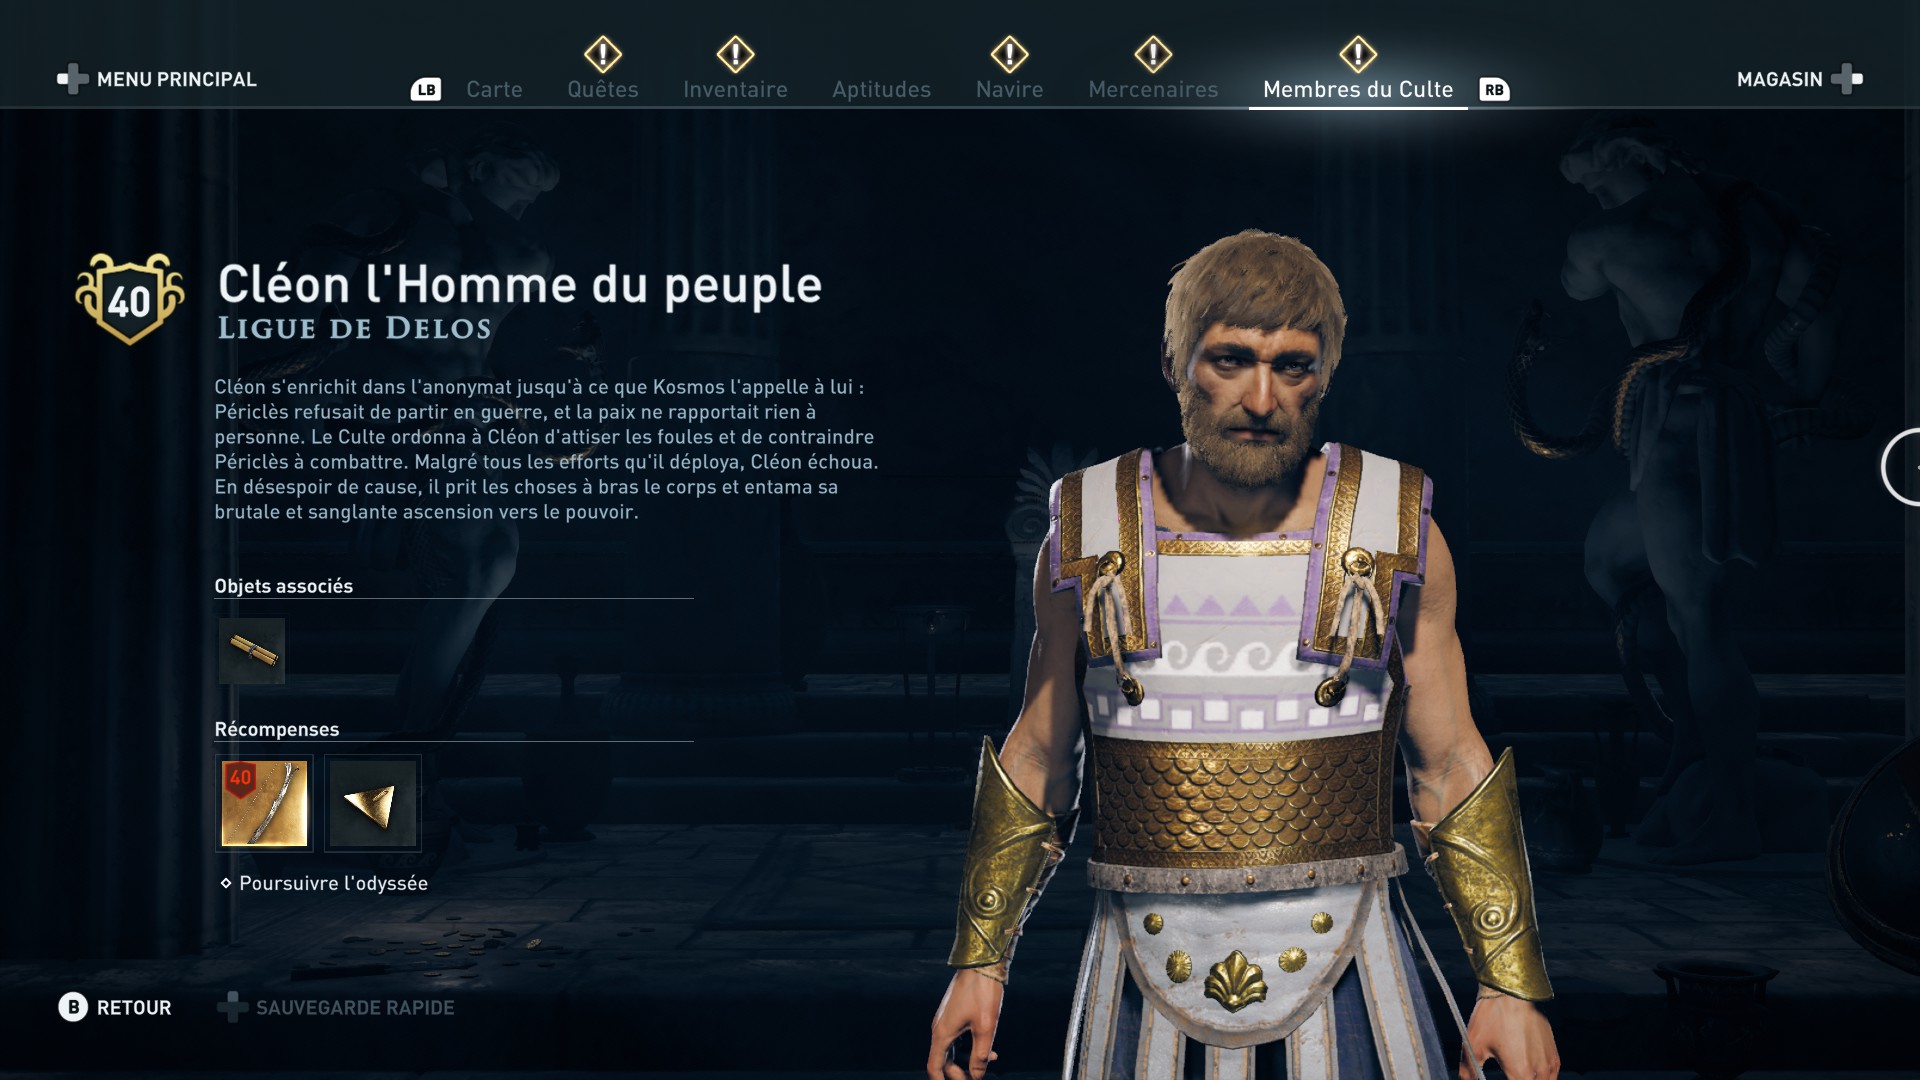 Assassin's Creed Odyssey trouver et tuer les adeptes du culte du Kosmos, ps4, xbox one, pc, ubisoft, jeu vidéo, Ligue de delos Cleon l'homme du peuple